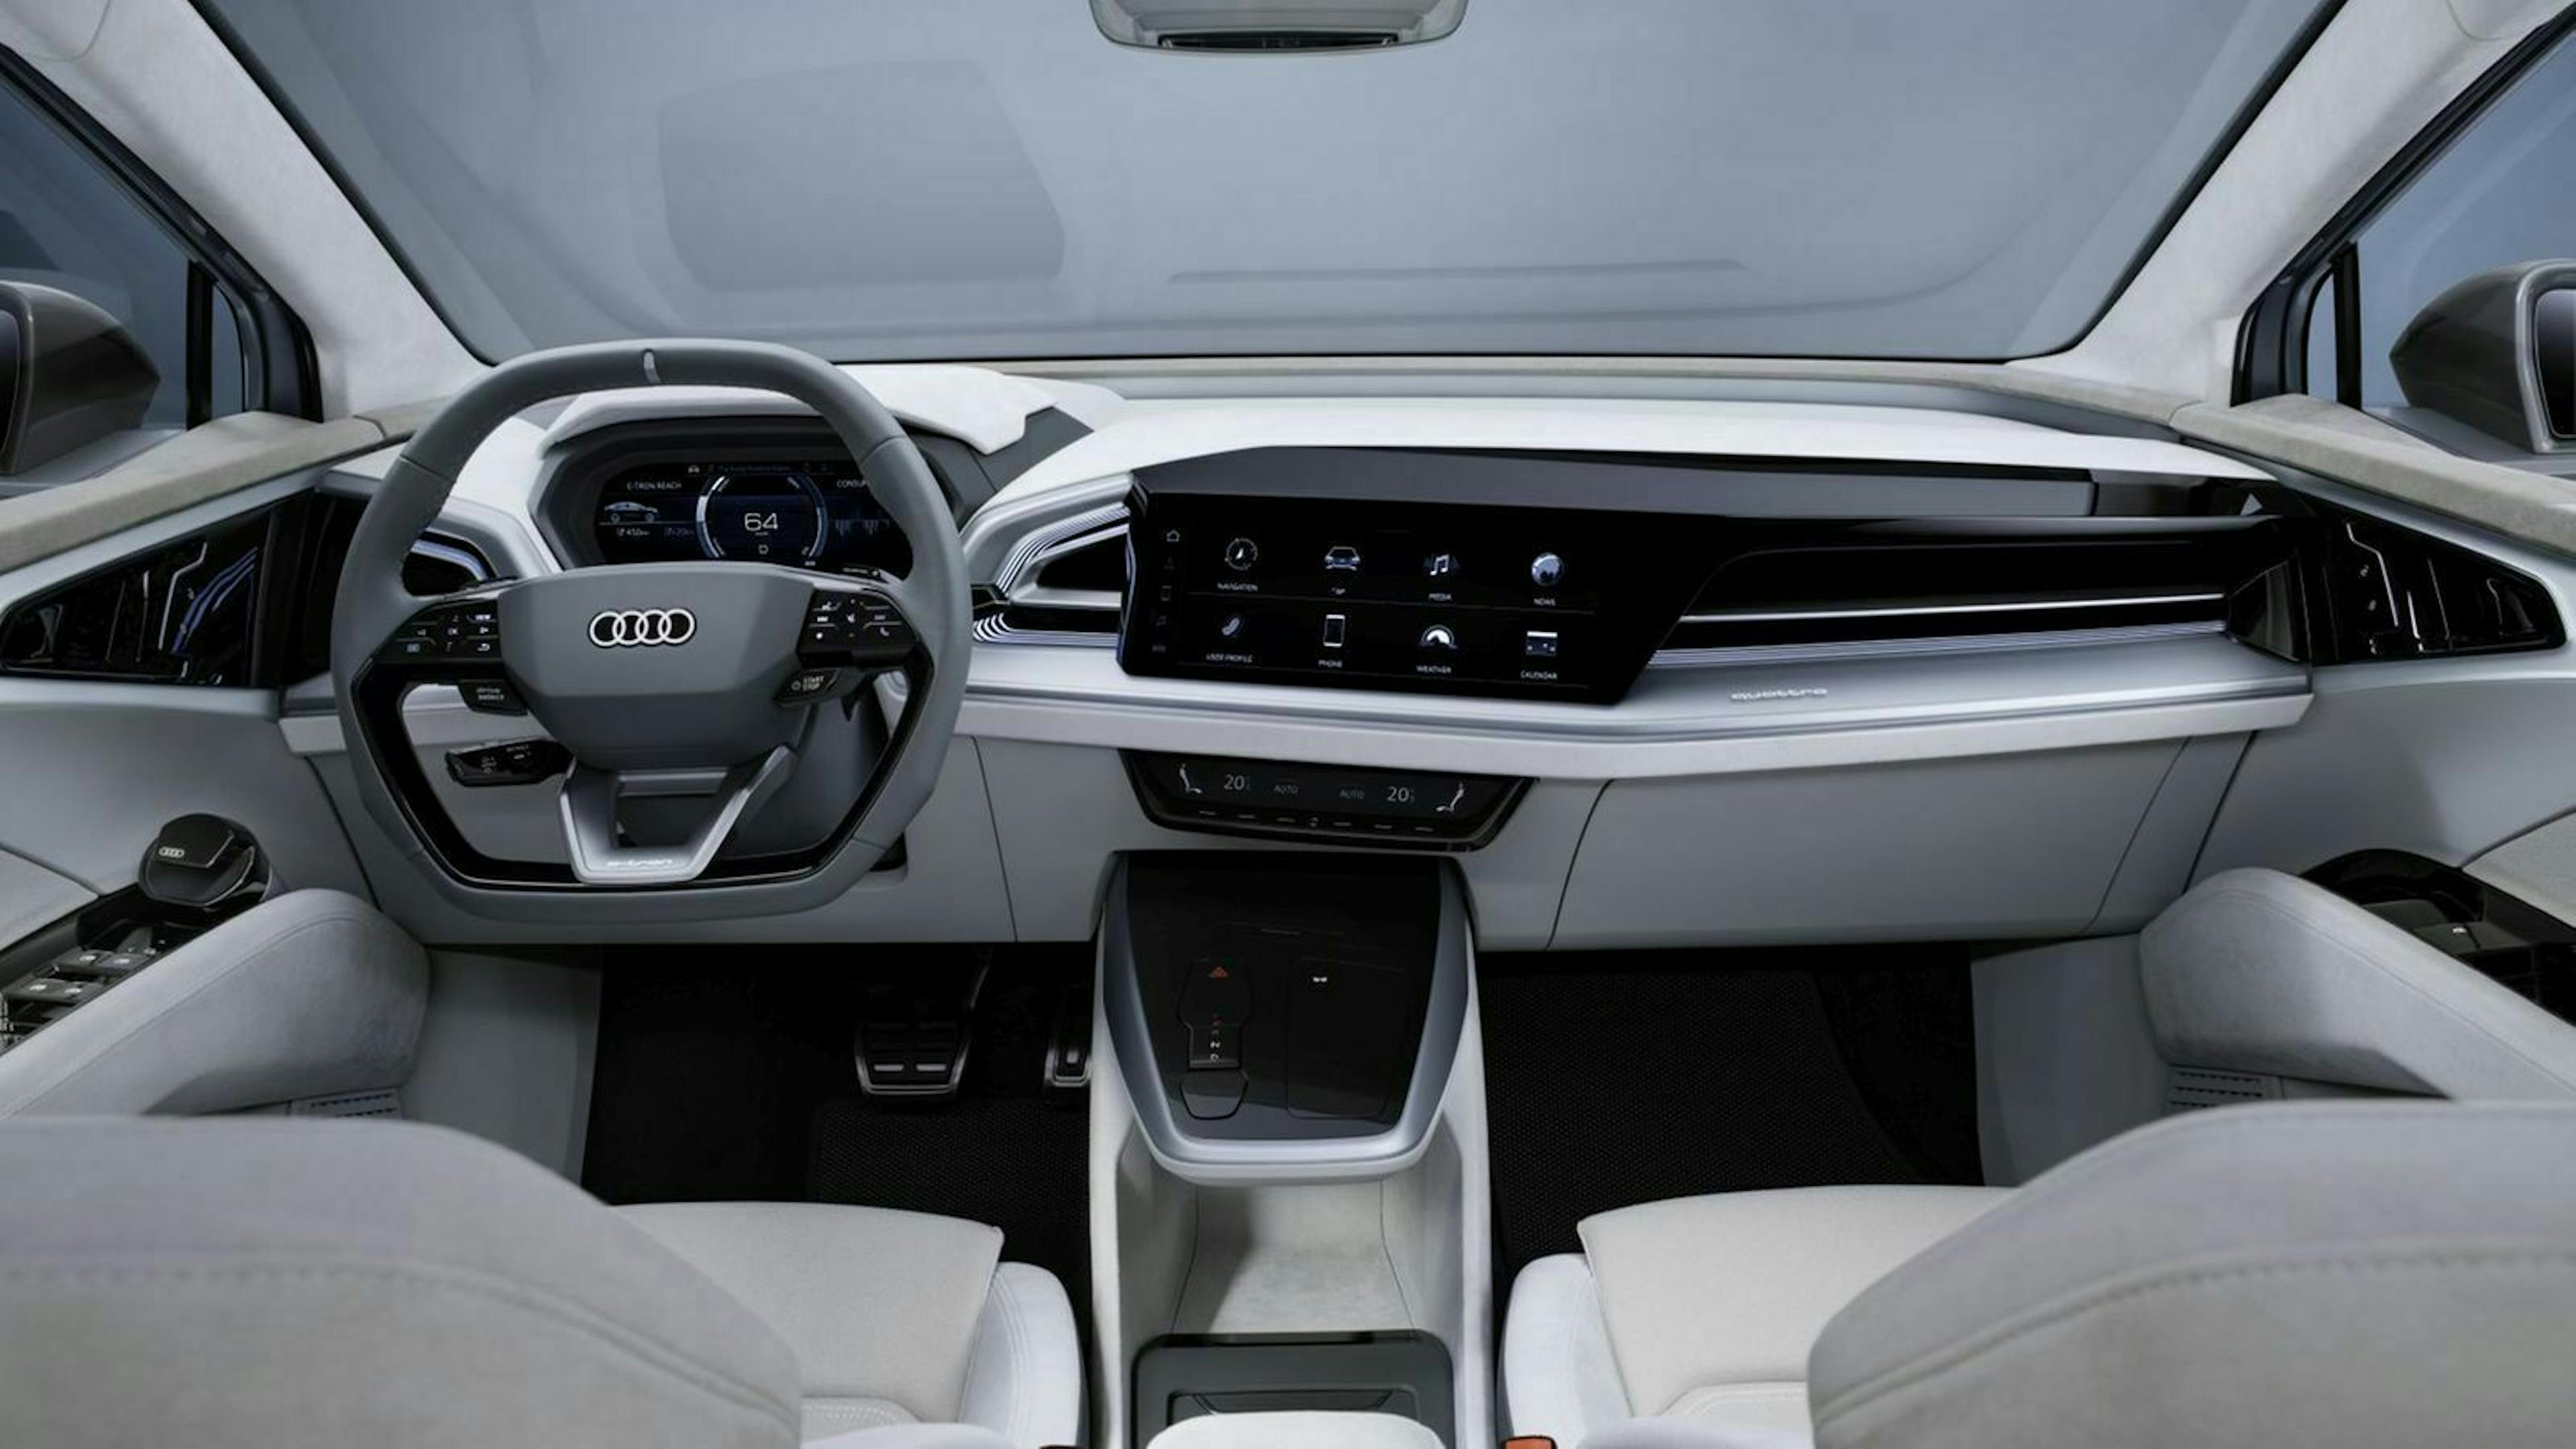 Audi Q4 E-Tron (2021) Neuvorstellung Cockpitdesign mit zwei Bildschirmen